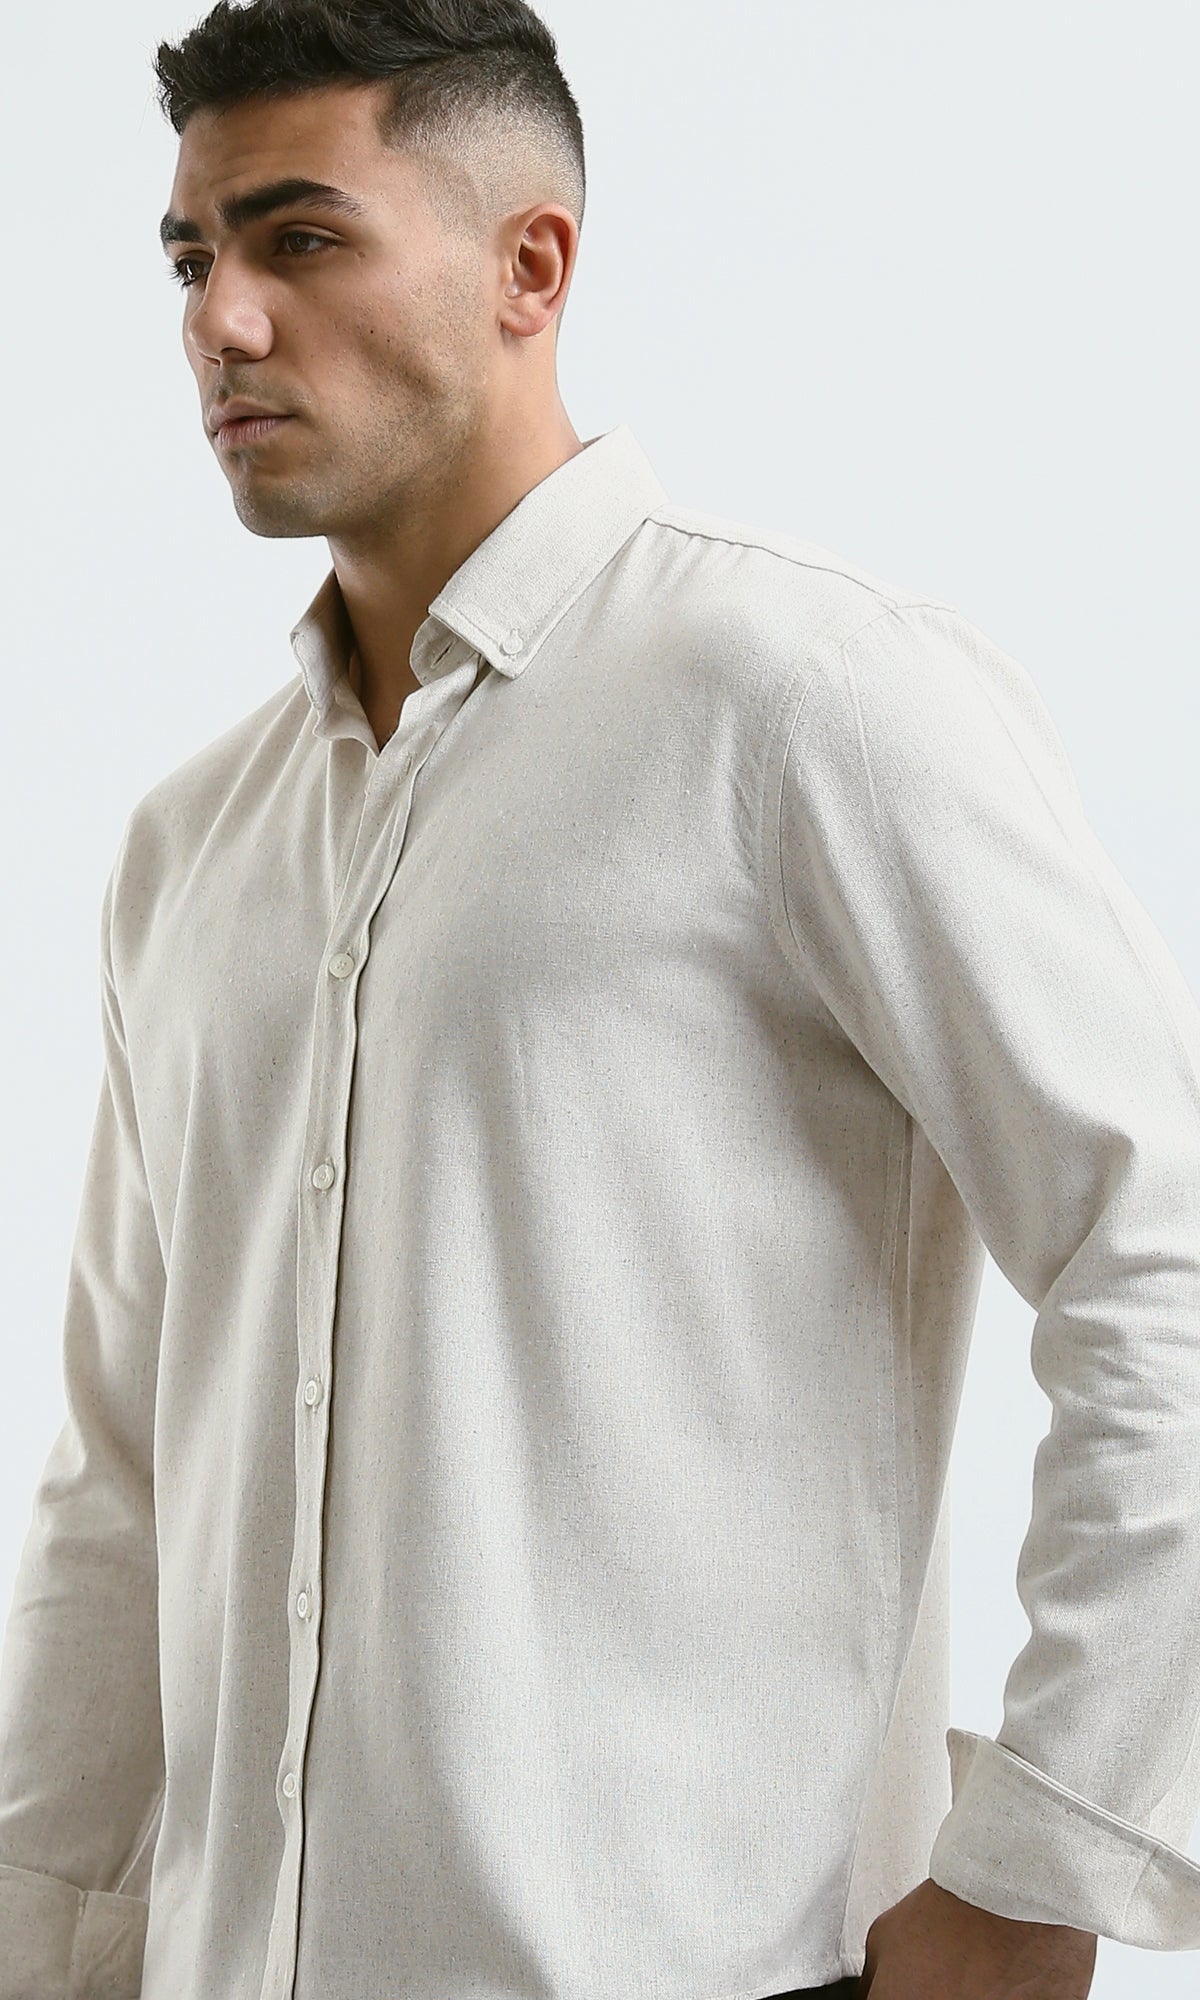 O181032 Light Beige Full Buttons Long Sleeve Shirt